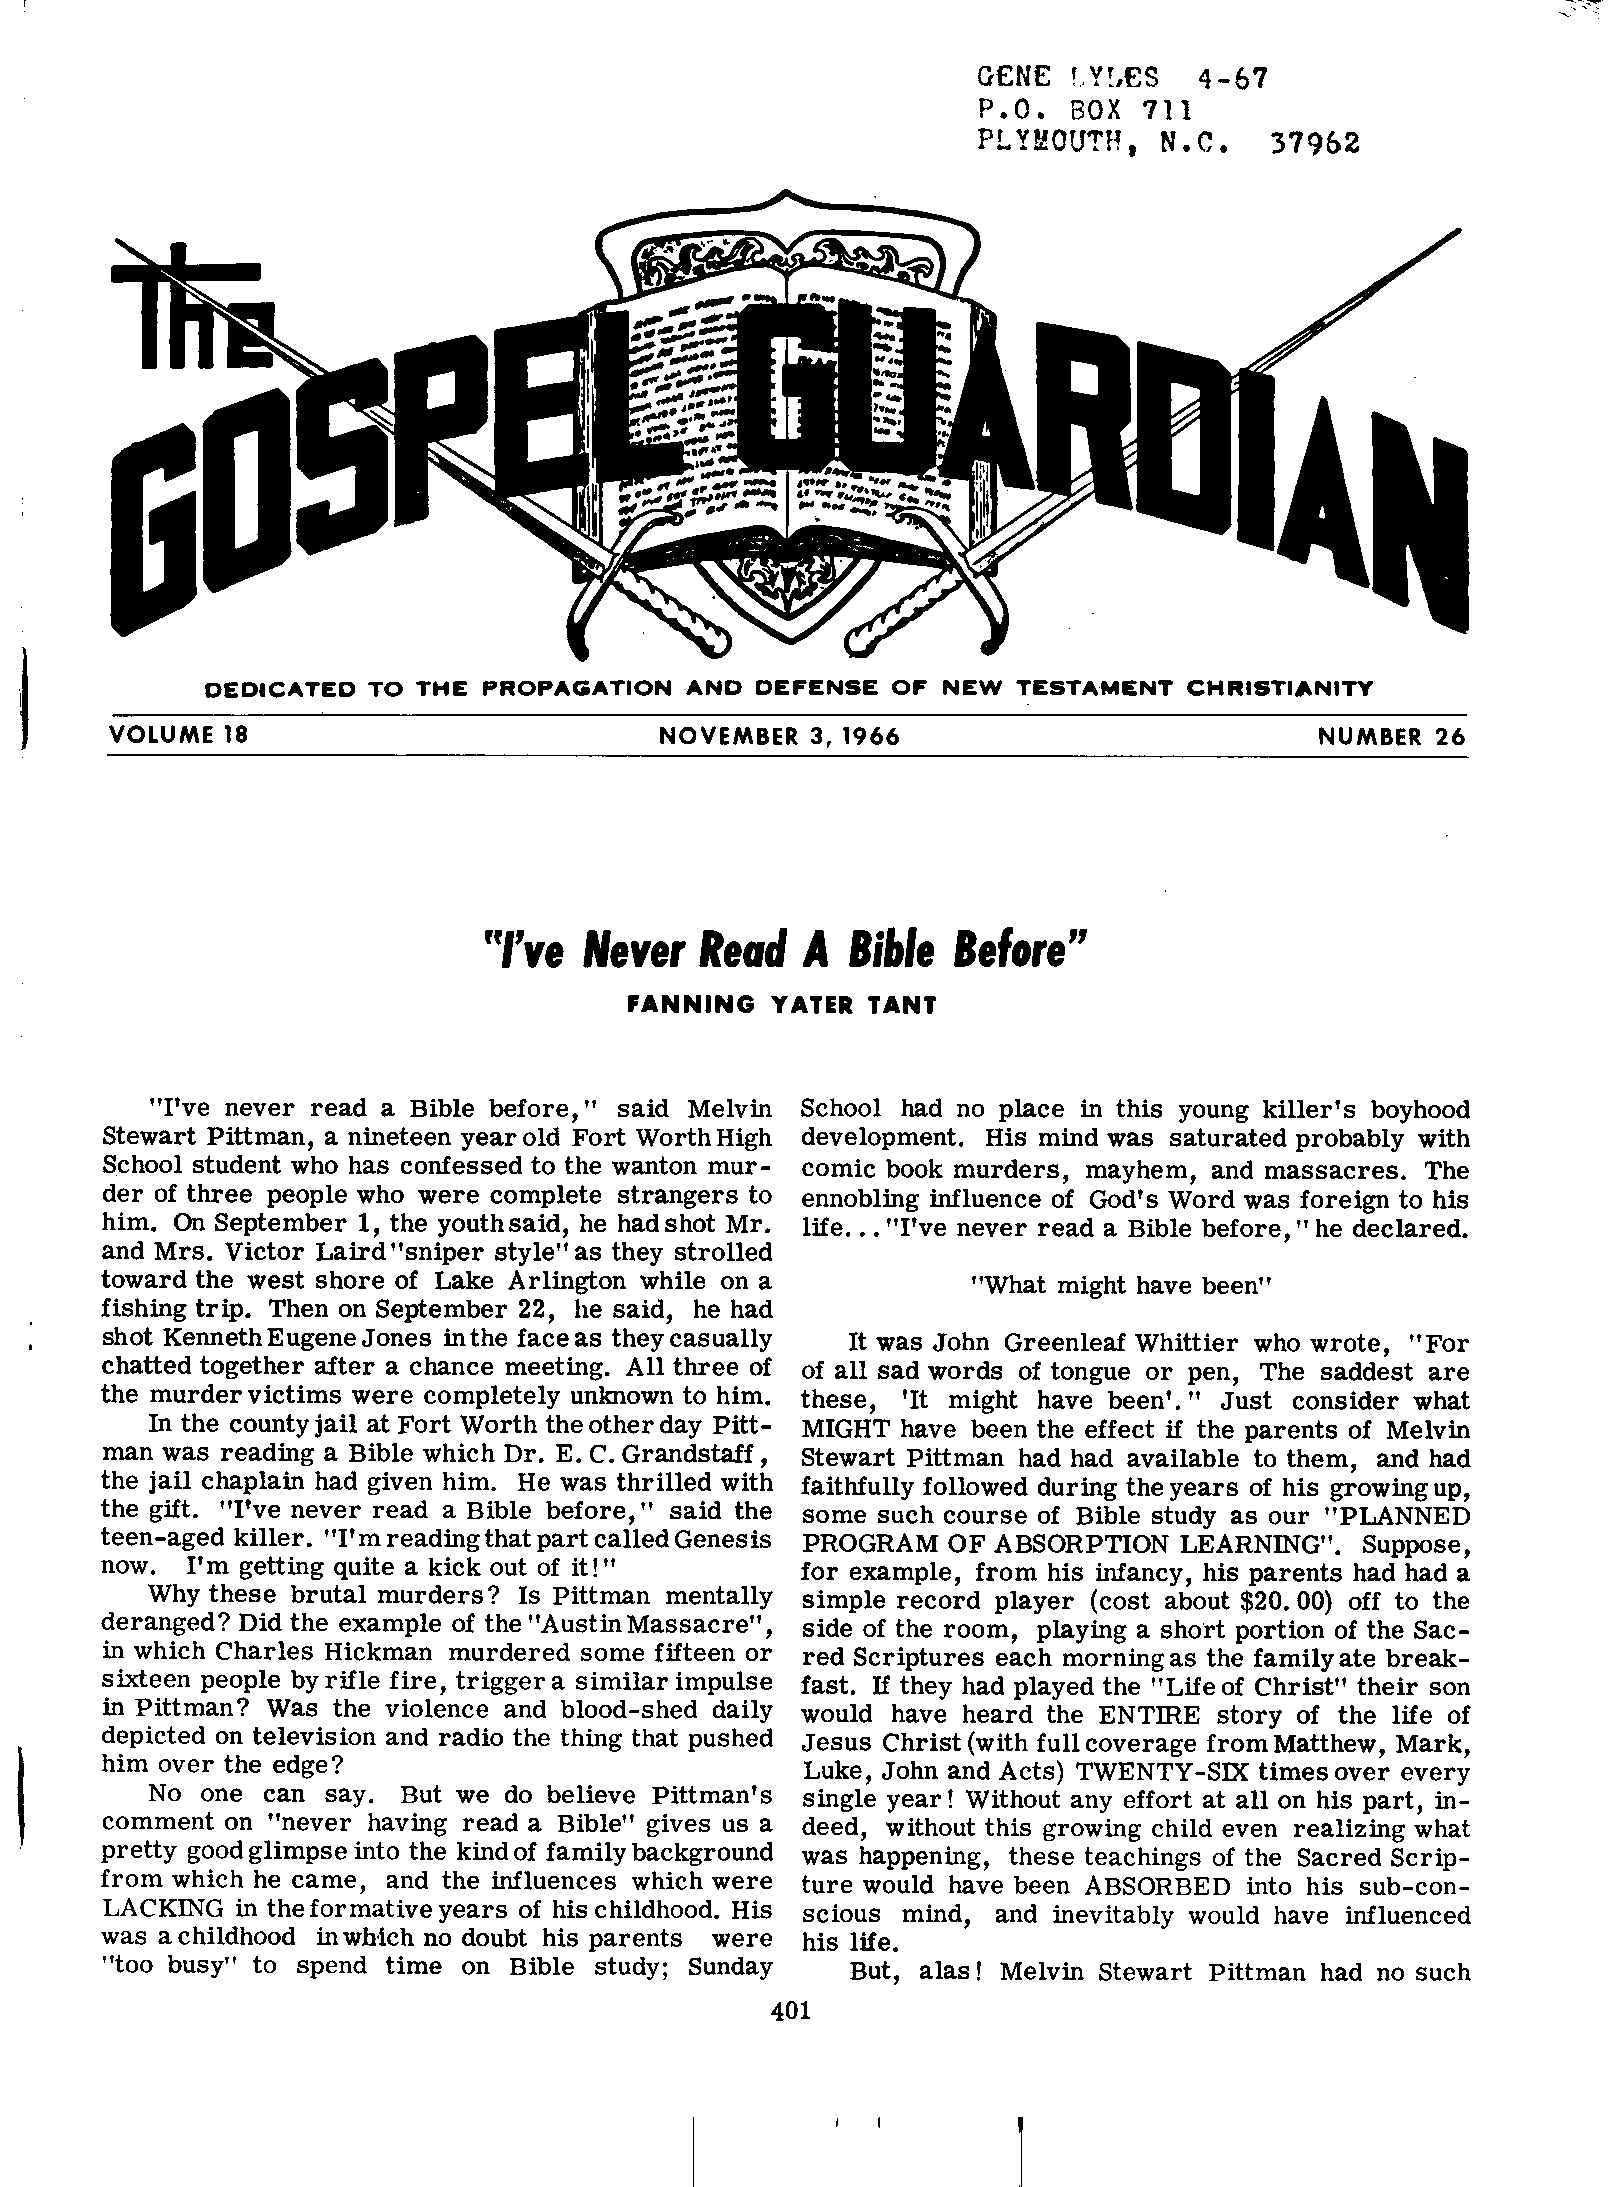 Gospel Guardian Original: Vol.18 No.26 Pg.1